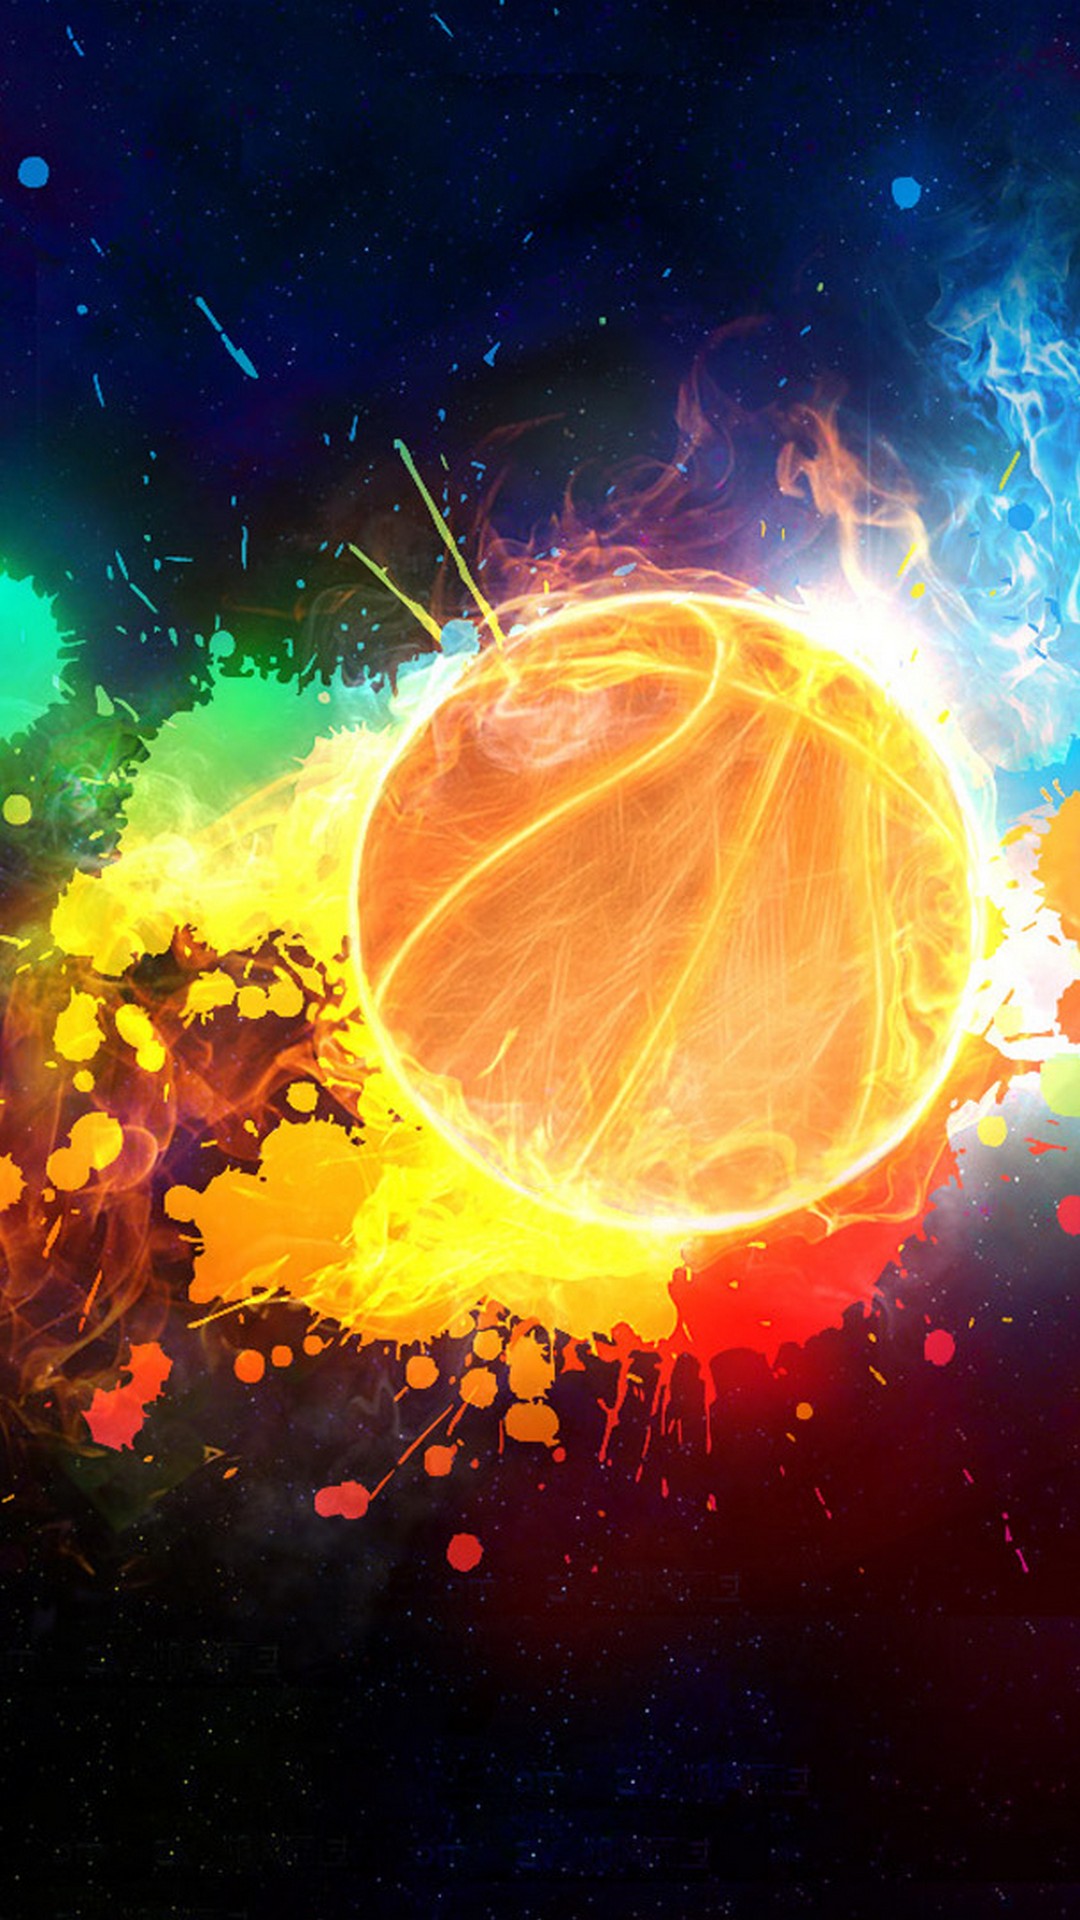 fond d'écran de basket ball iphone,orange,illustration,ciel,espace,art